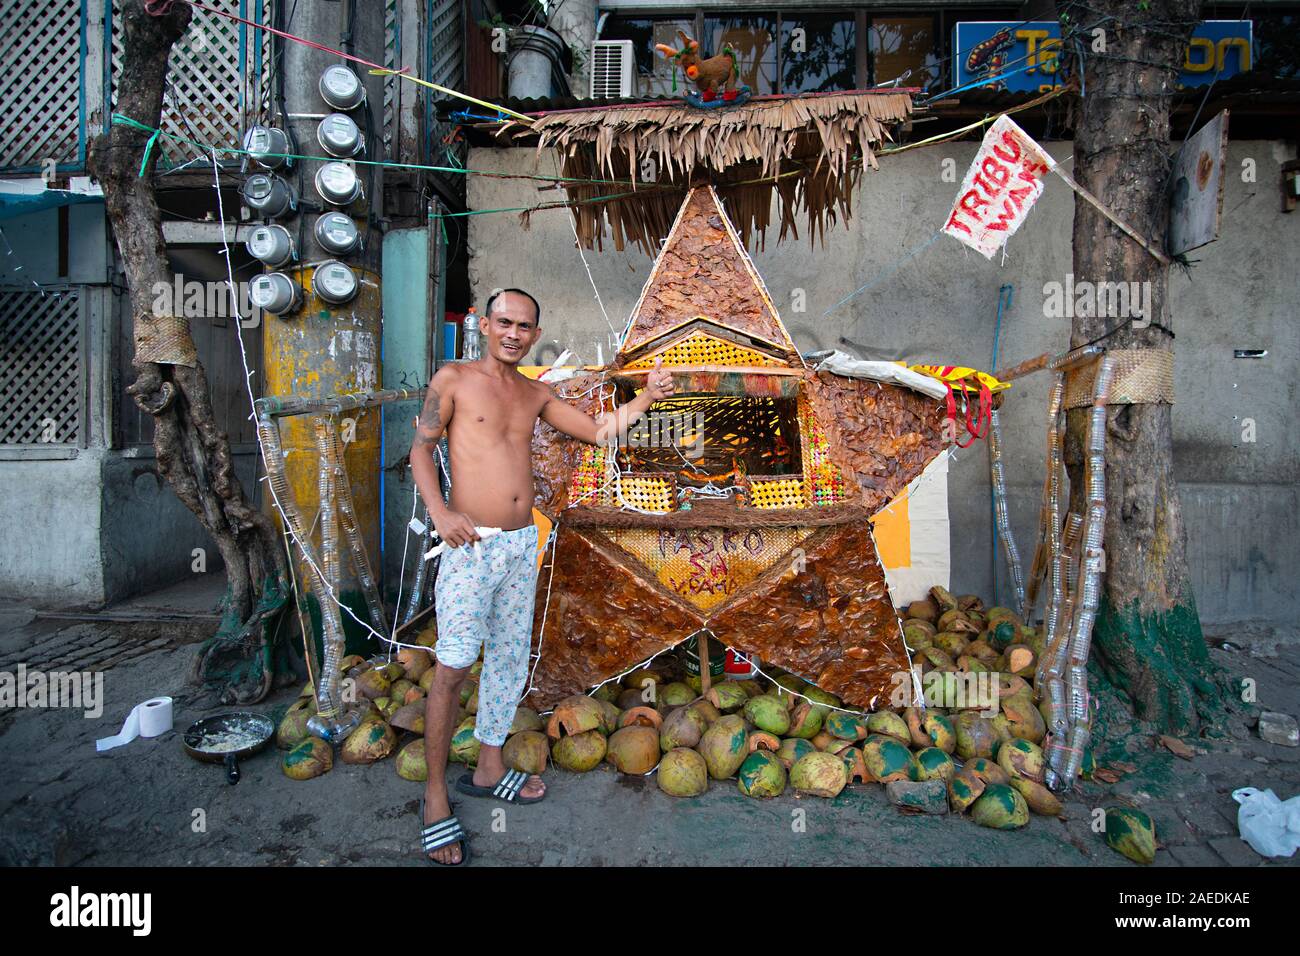 Un Filipino residente en una zona pobre de la ciudad de Cebu, posa junto a su creación artística conocida como Parol que él construyó para el período de Navidad Foto de stock